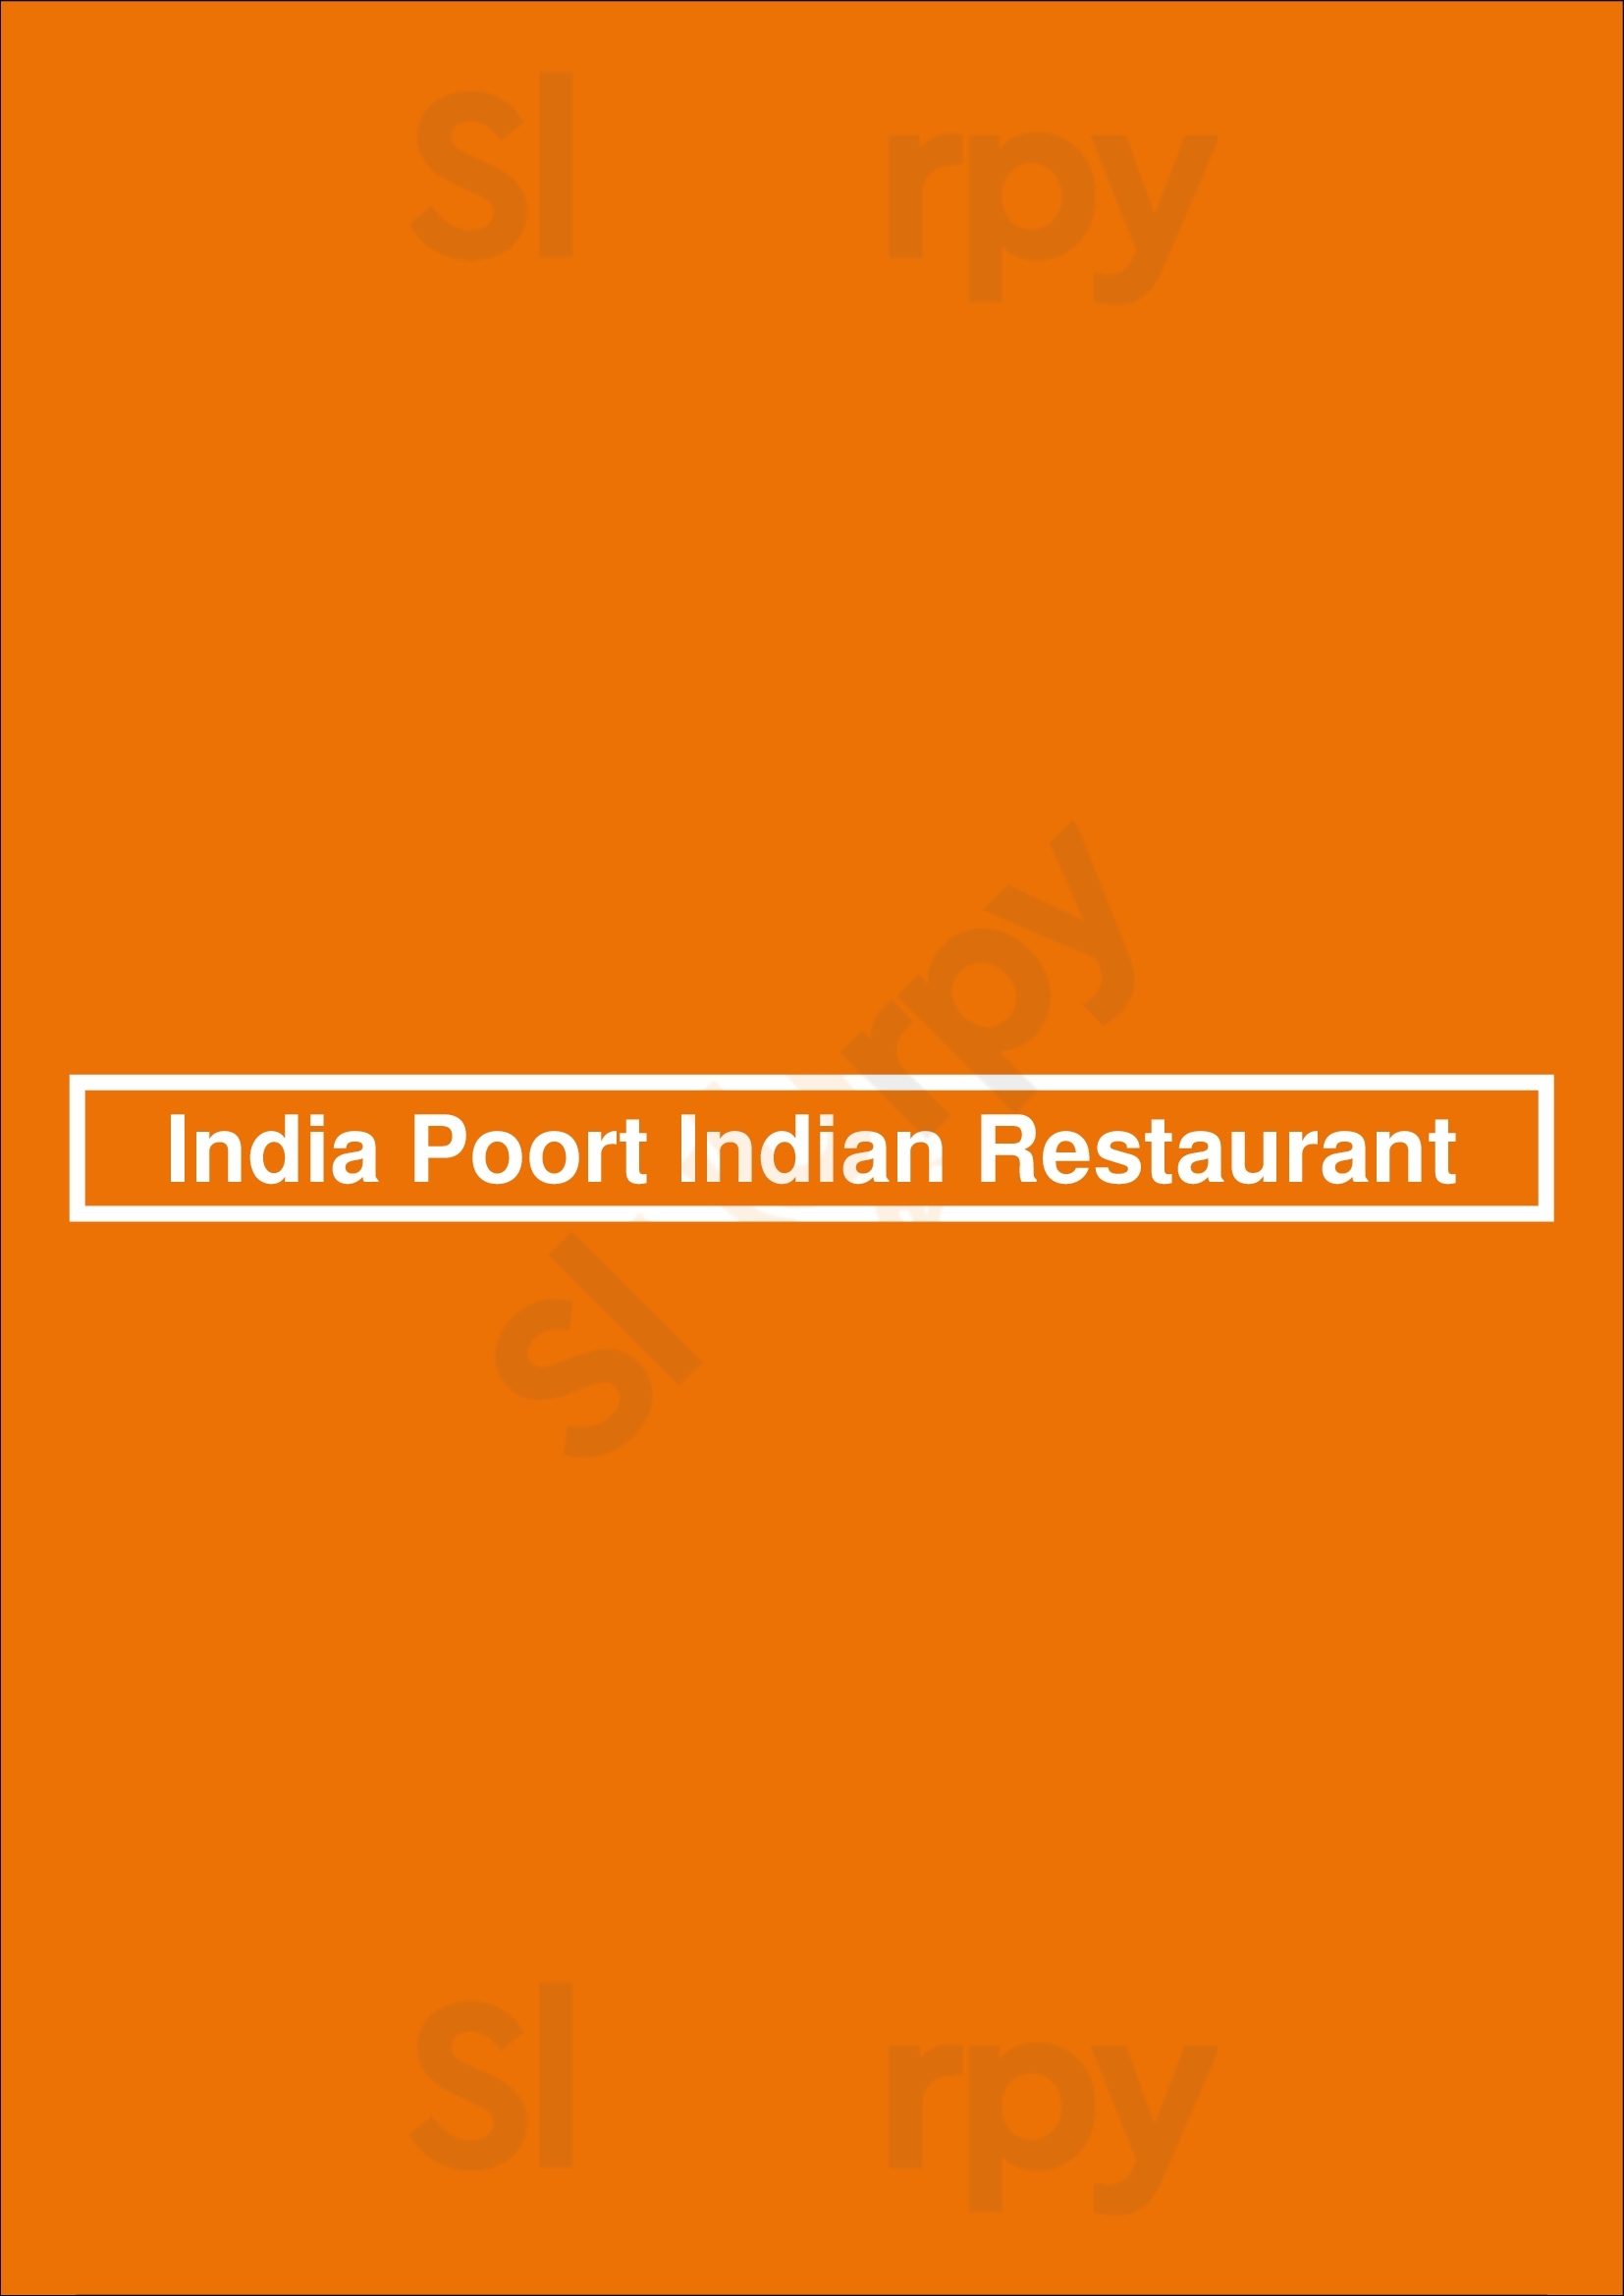 India Poort Indian Restaurant Hilversum Menu - 1